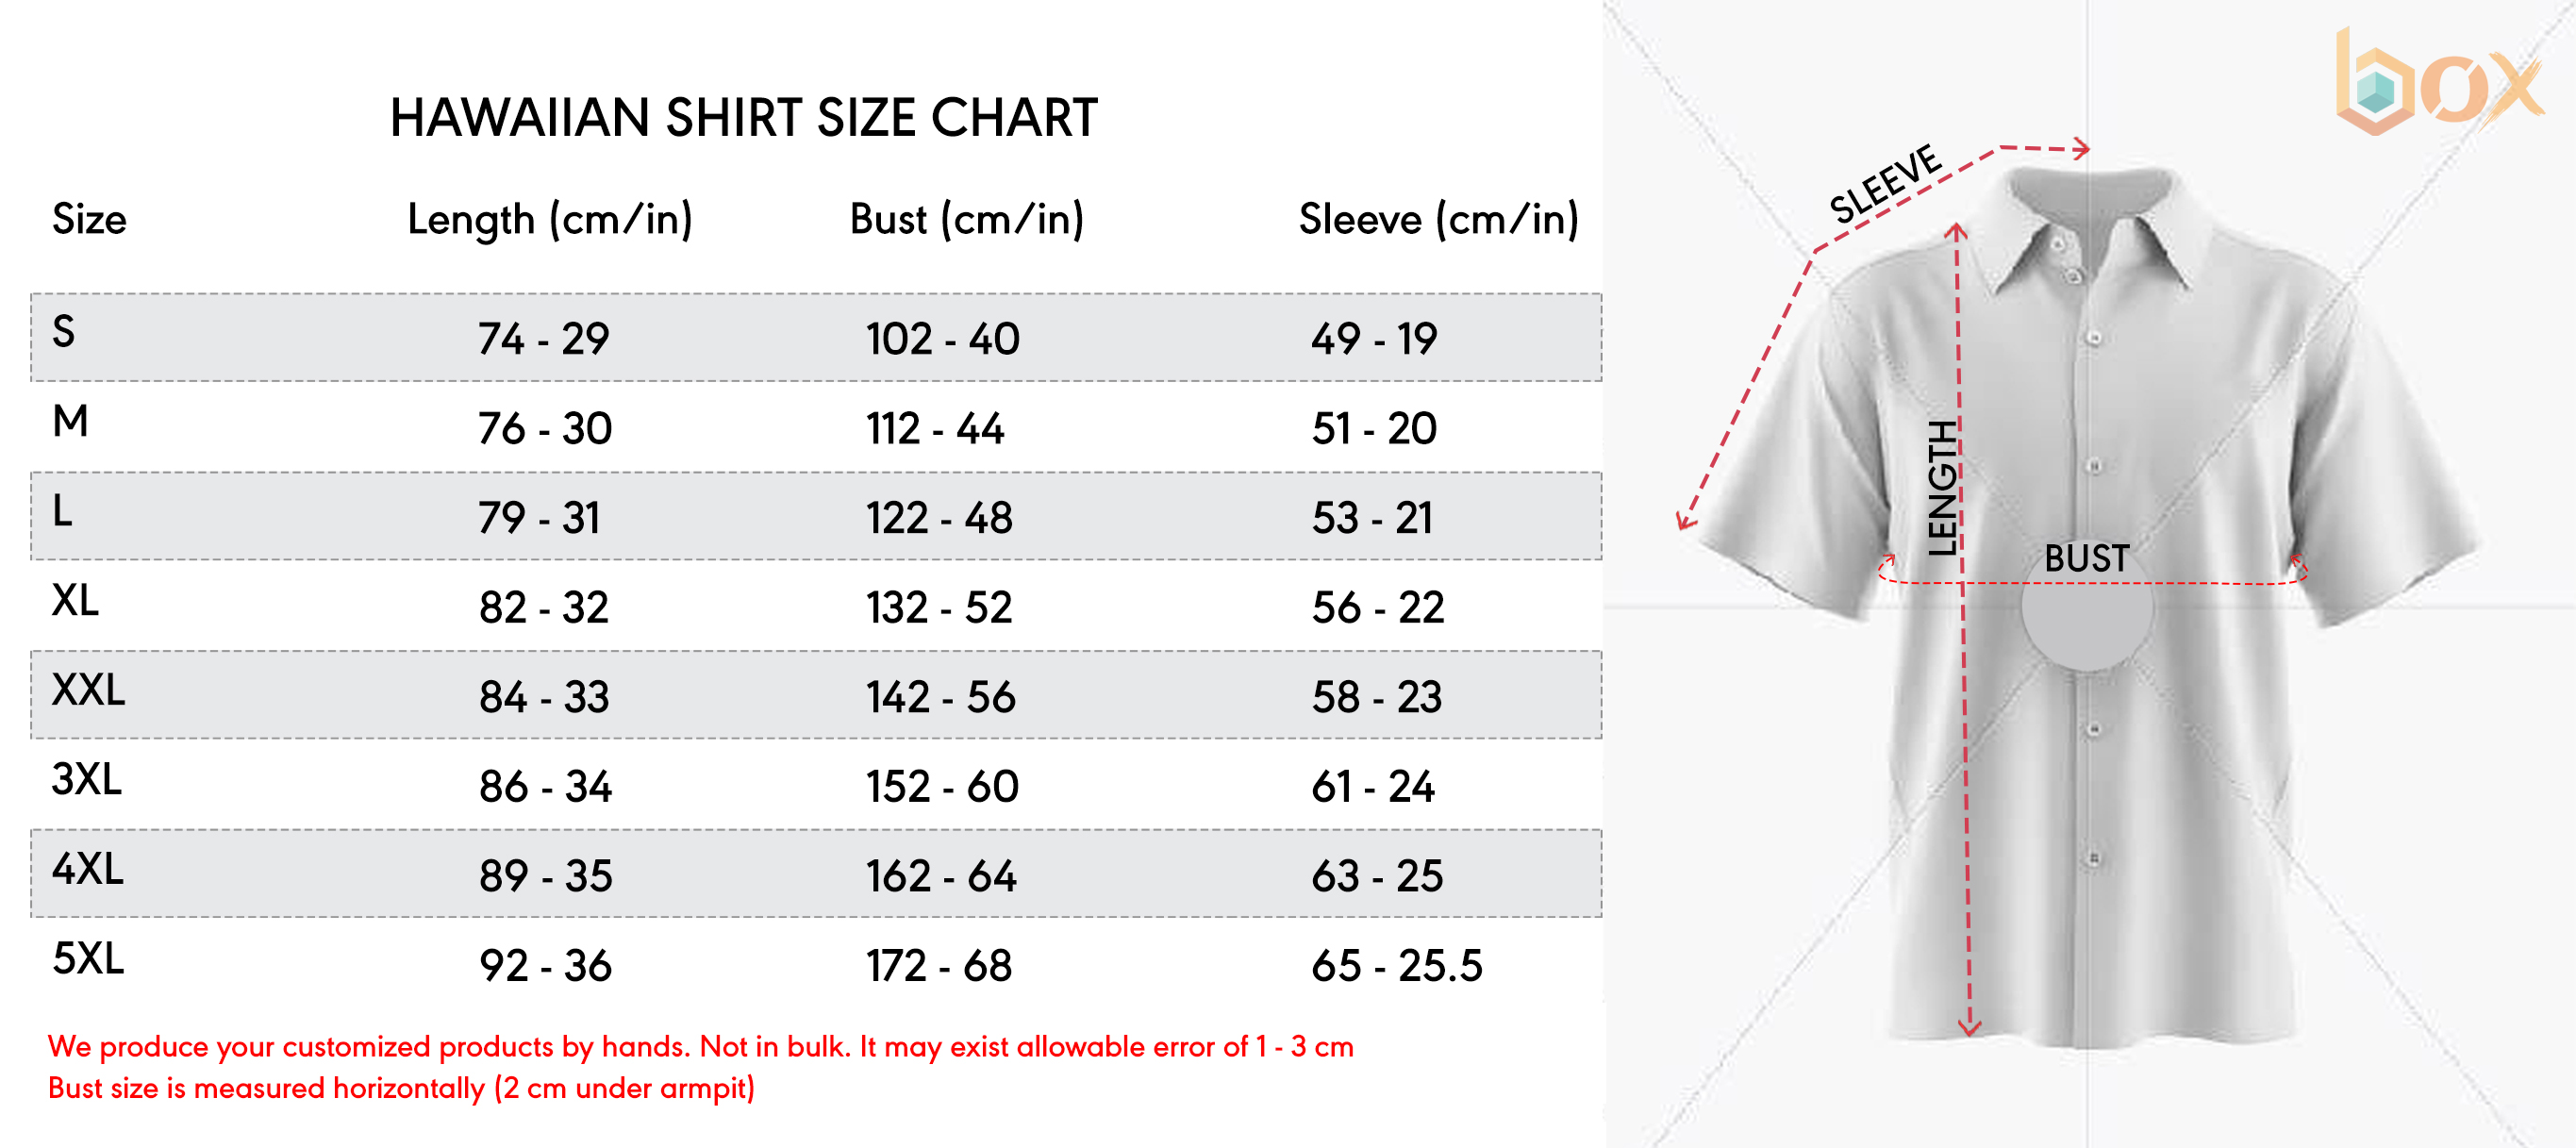 Hawaiian Shirt Size Chart Boxbox